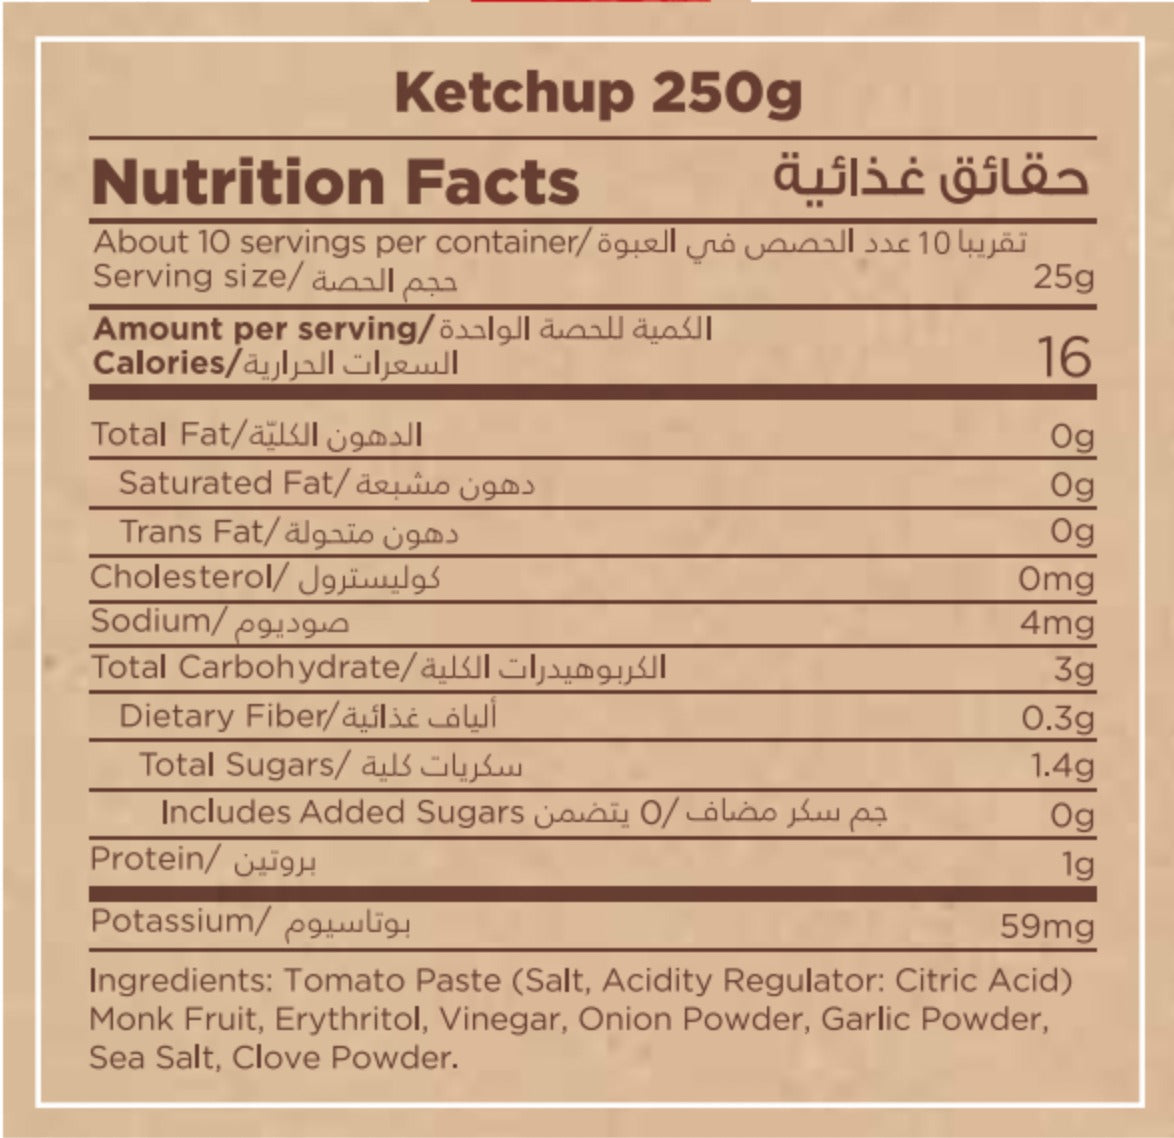 MUNCH BOX Ketchup, 250g